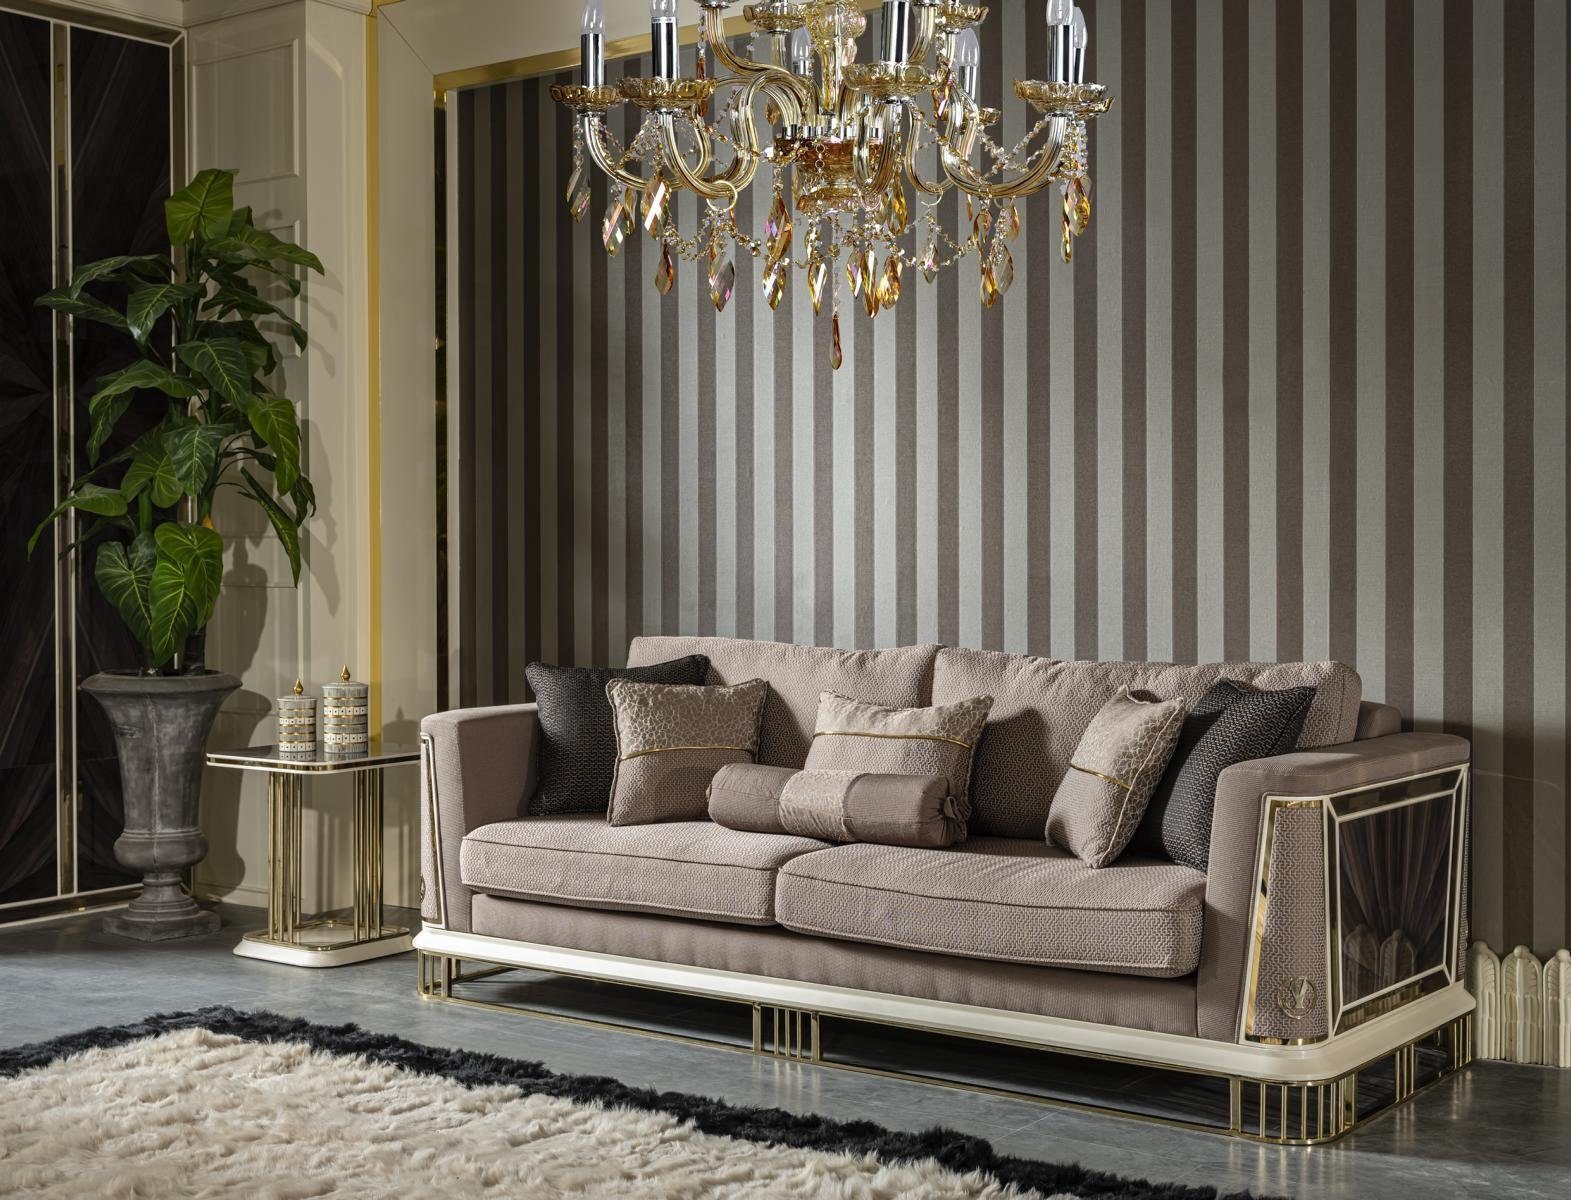 JVmoebel Sofa Sofa 3 Sitzer Braun Wohnzimmer Luxus Design Elegantes Stil Möbel Sofas, Made in Europe